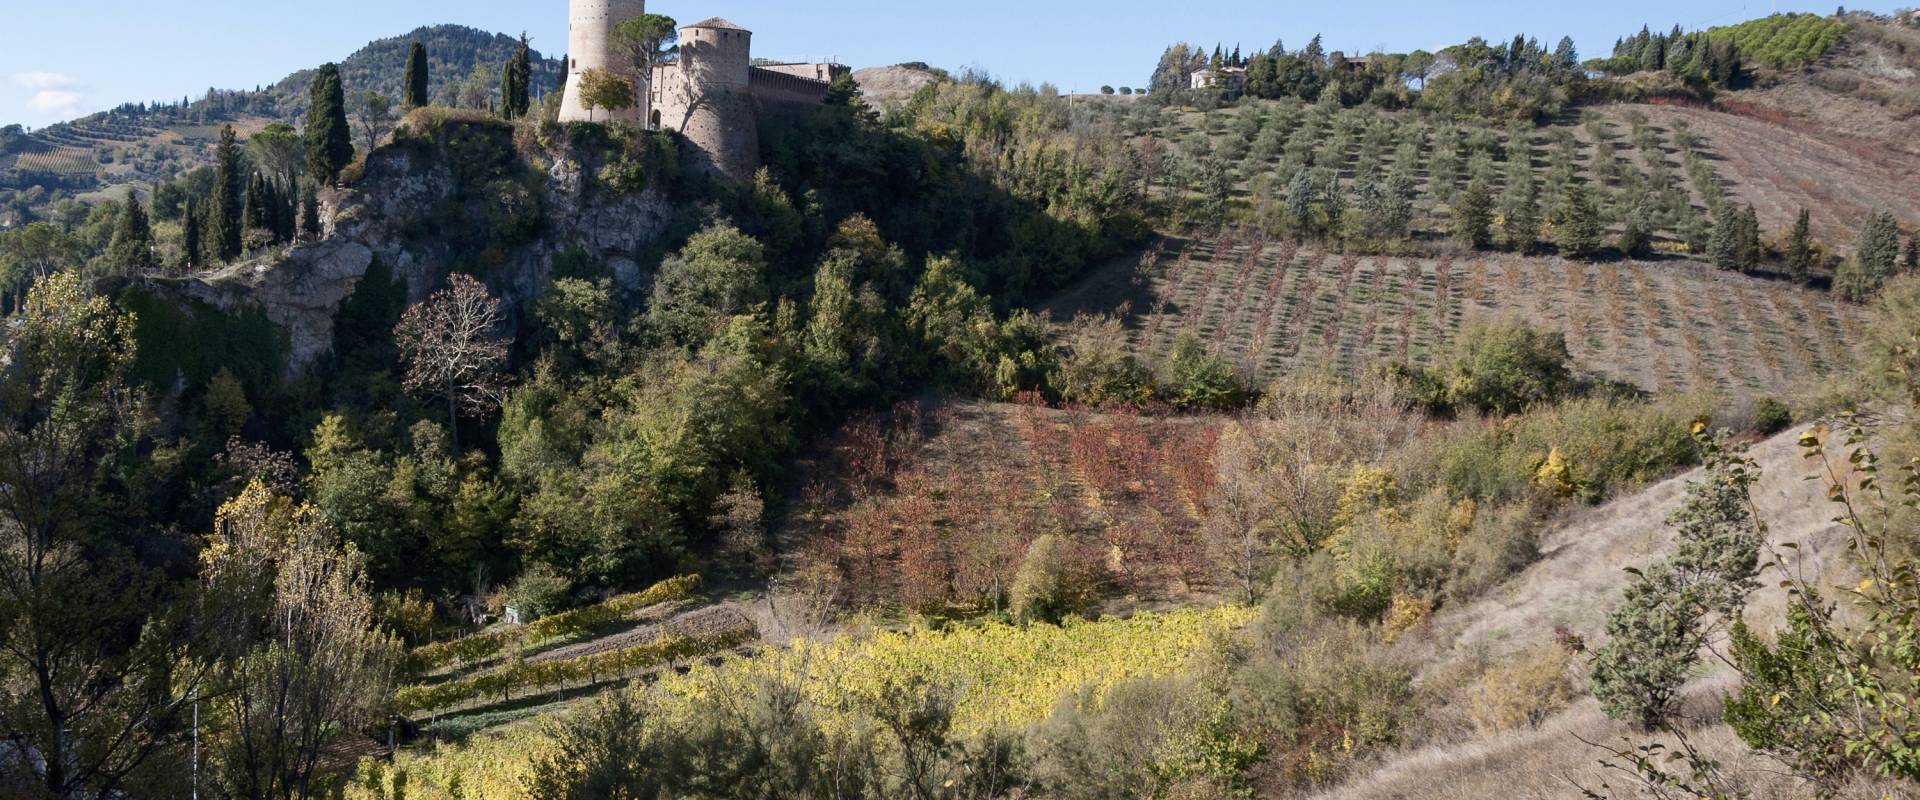 Rocca di Brisighella foto di Vanni Lazzari